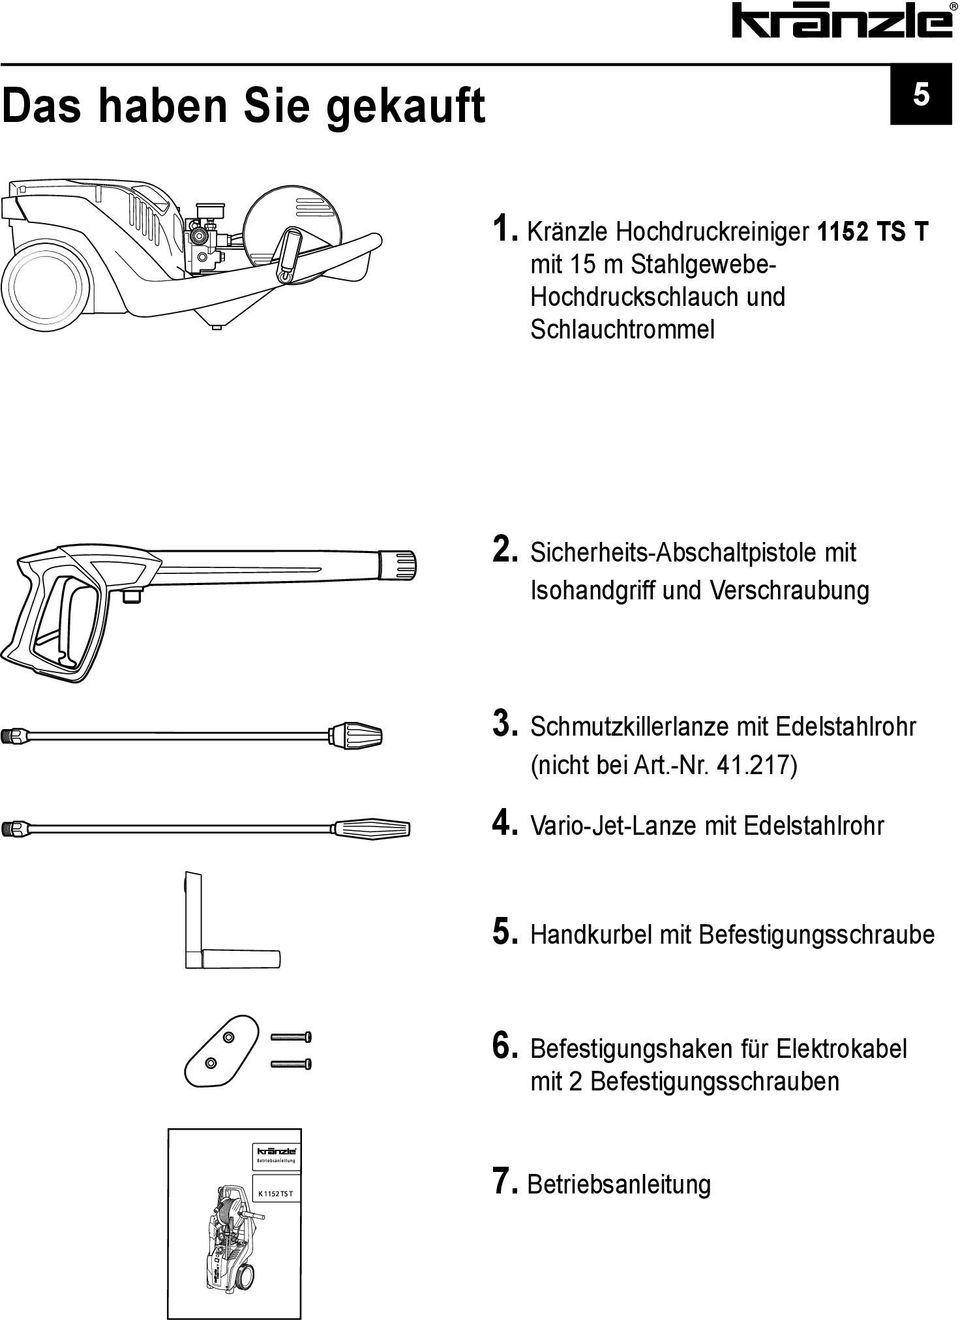 Sicherheits-Abschaltpistole mit Isohandgriff und Verschraubung 3.